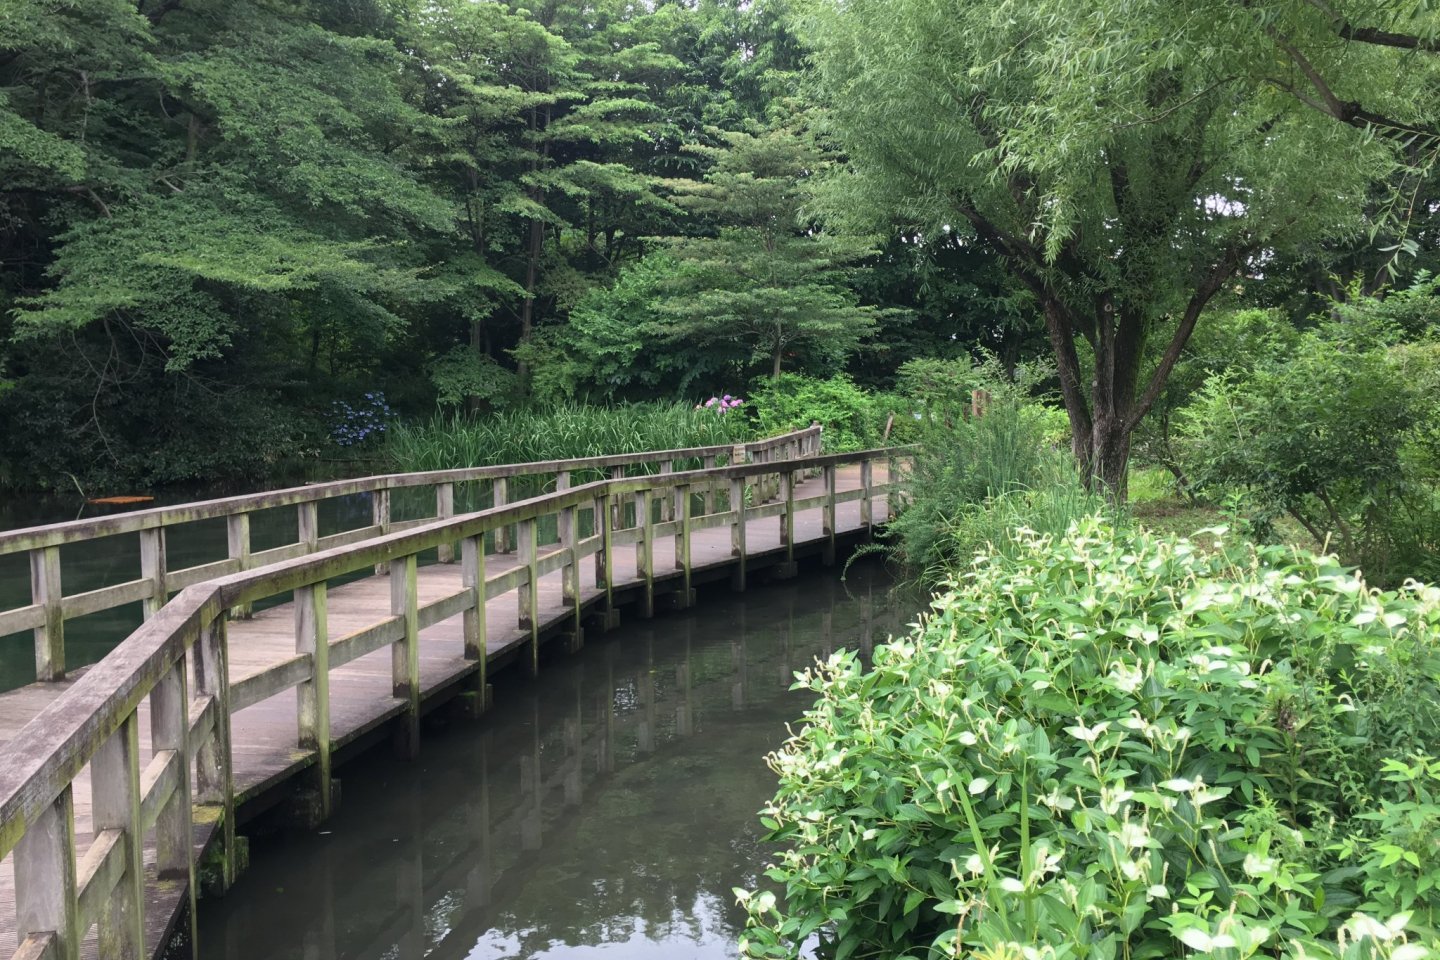 Sugatami-no-ike Pond